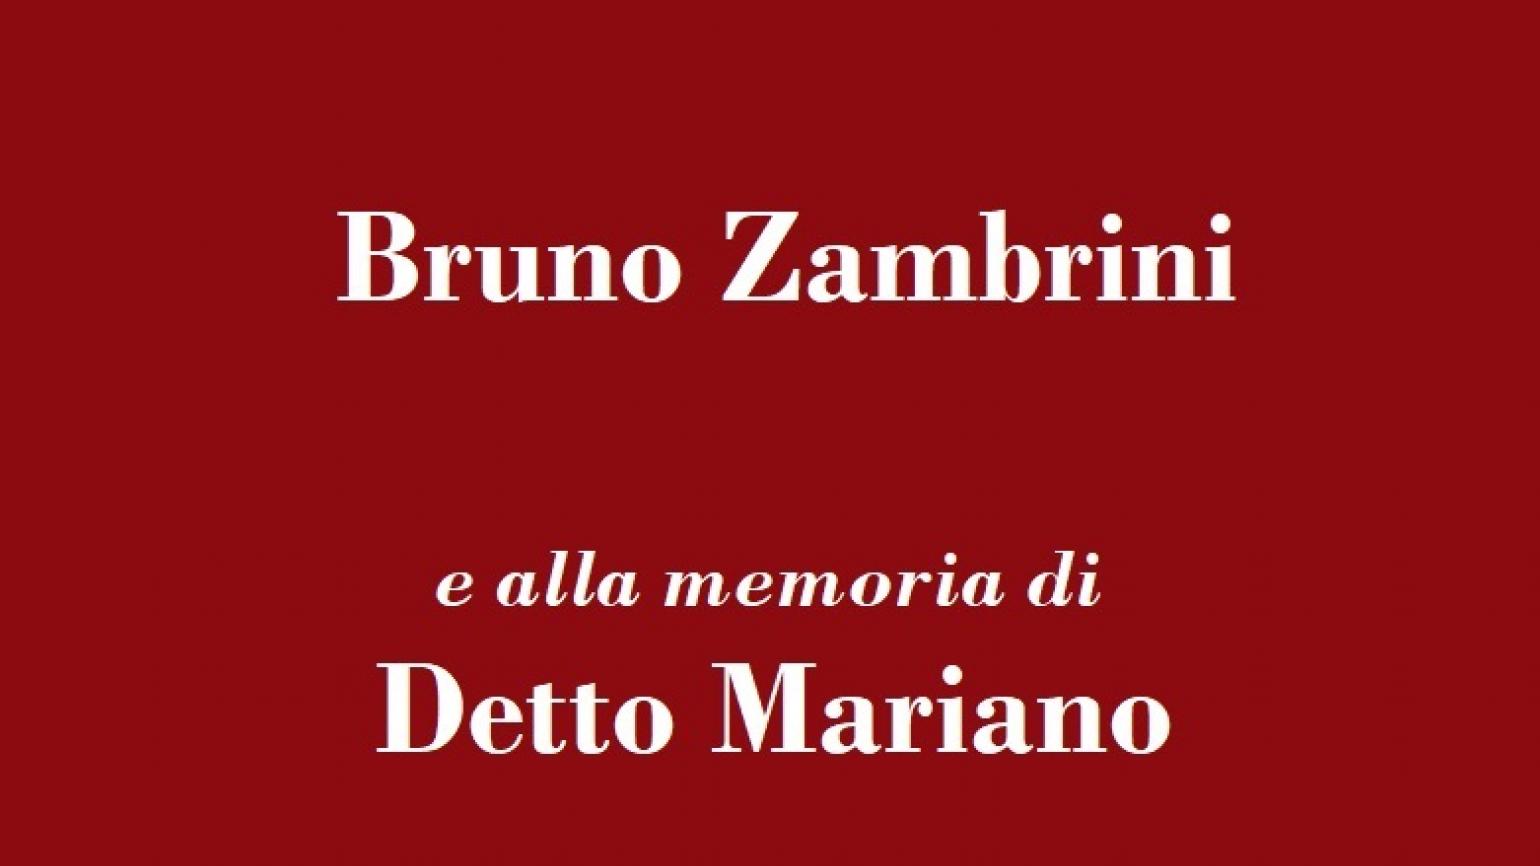 il “Premio Cicognini” sarà conferito al famoso compositore Bruno Zambrini